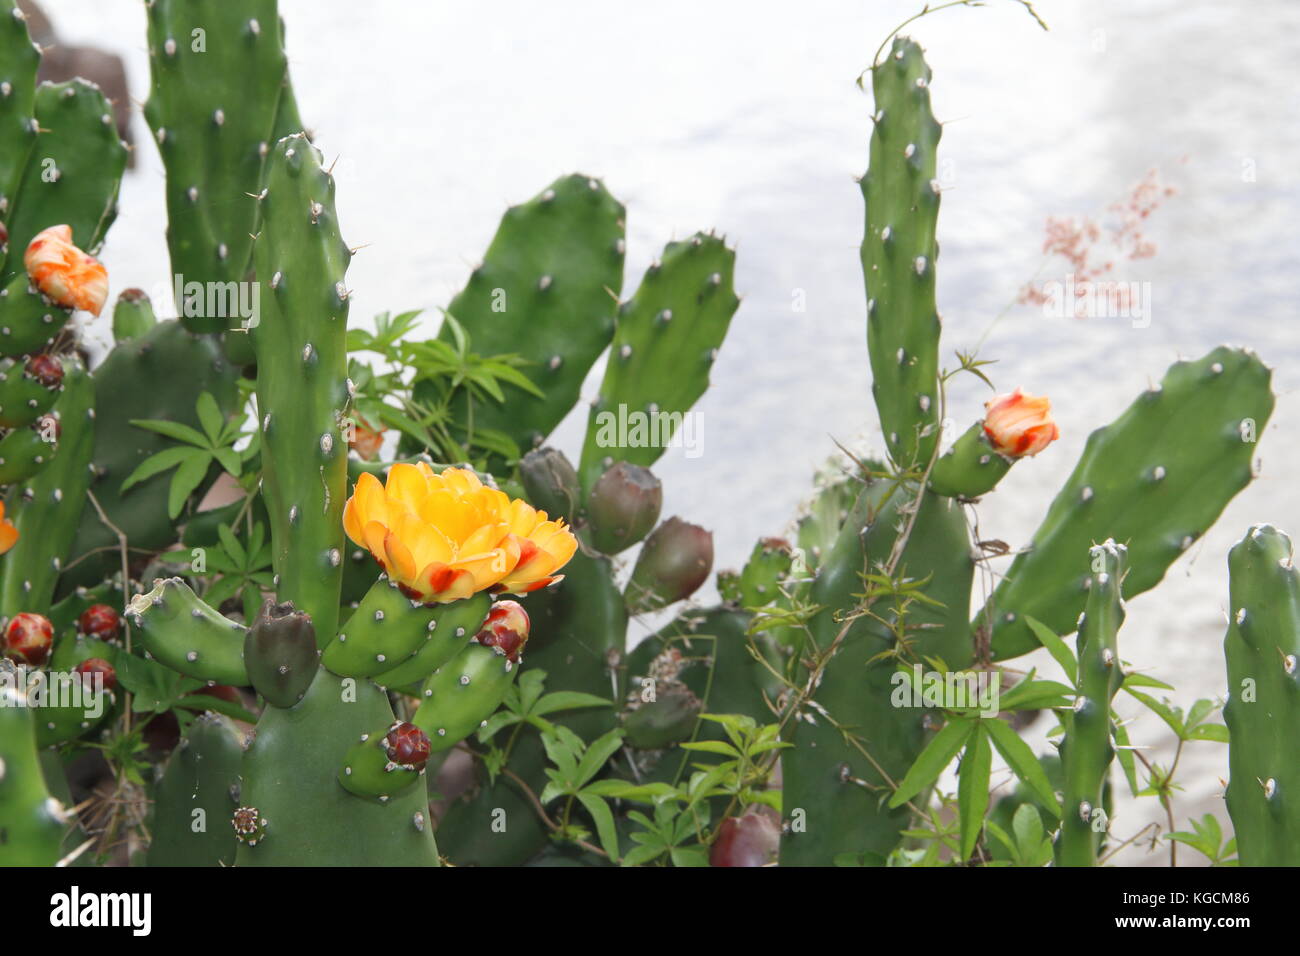 Piante Grasse Fiori Gialli.Cactus E Piante Grasse Con Fiori Gialli In Primavera Foto